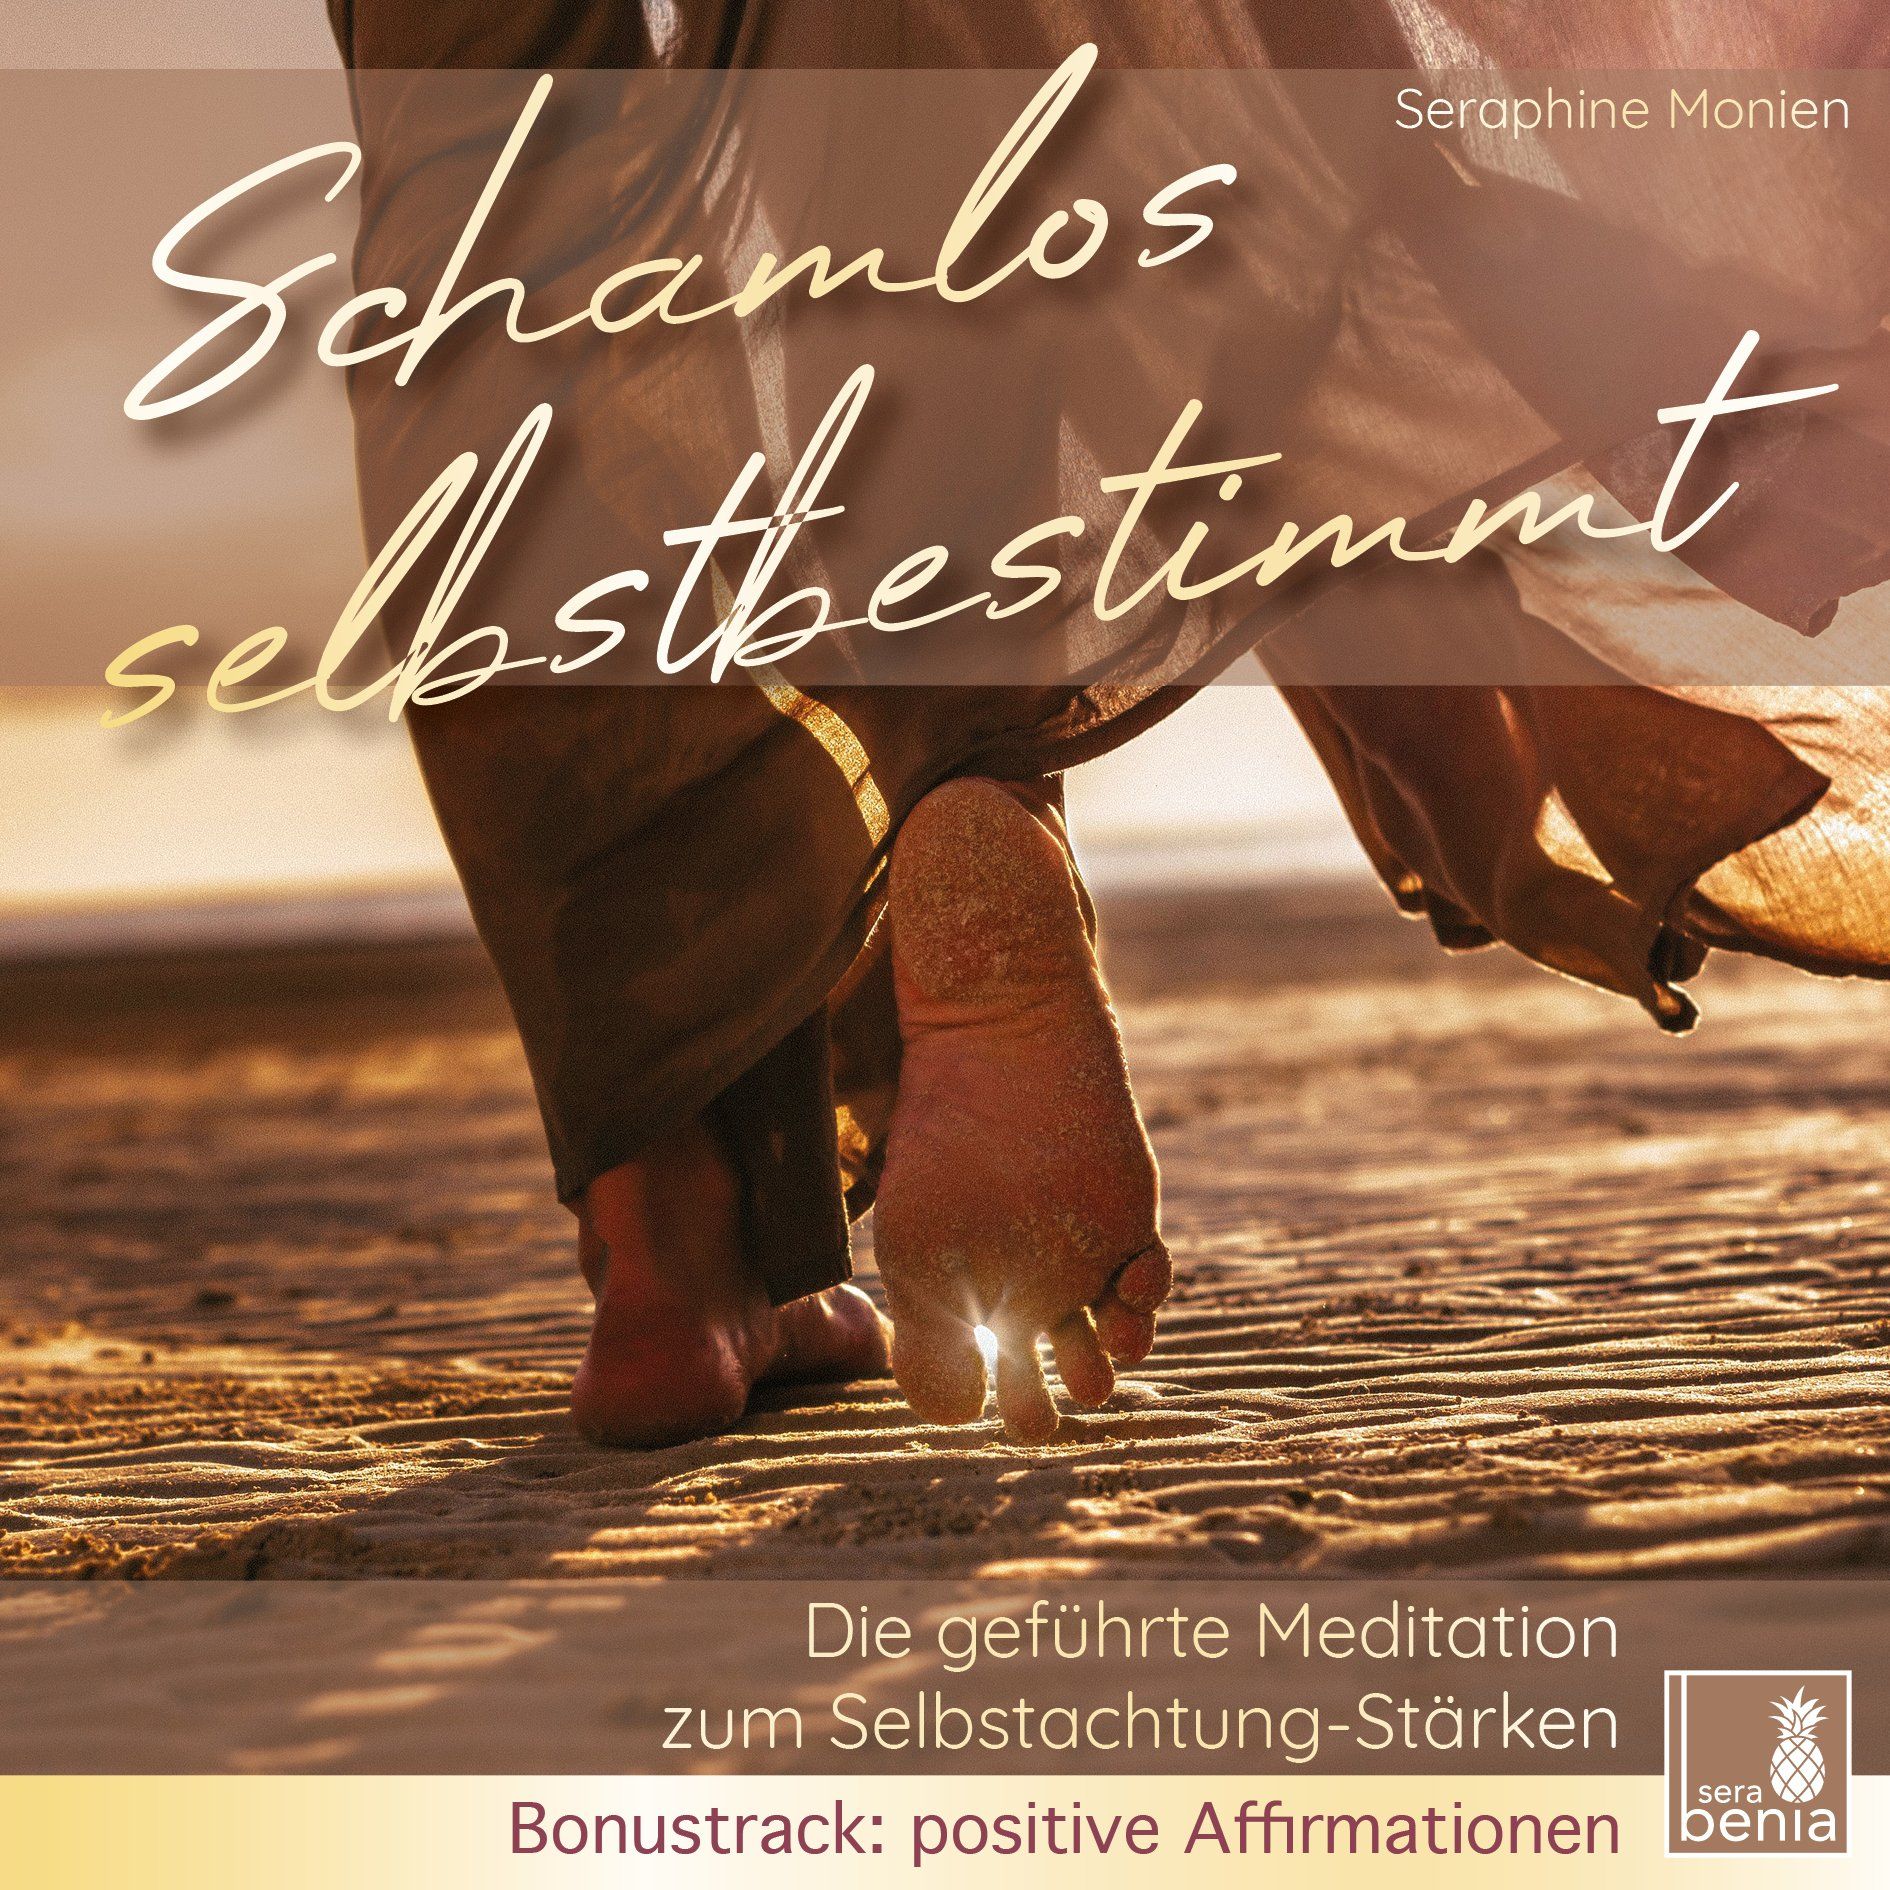 CD cover - Schamlos selbstbestimmt Die geführte Meditation zum Selbstachtung Stärken Bonustrack: positive Affirmationen